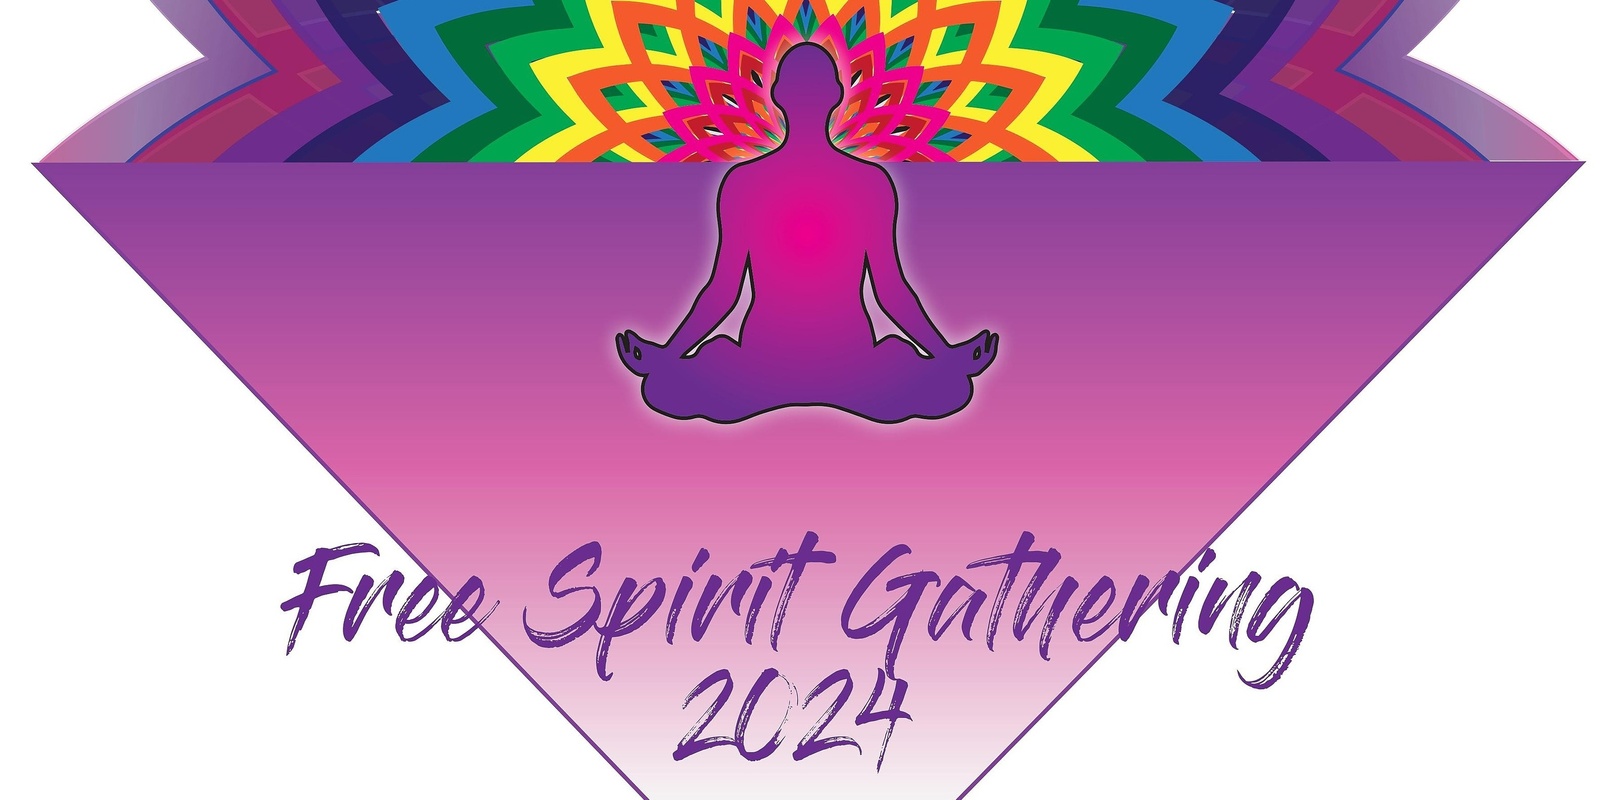 Free Spirit Gathering 2024 Humanitix